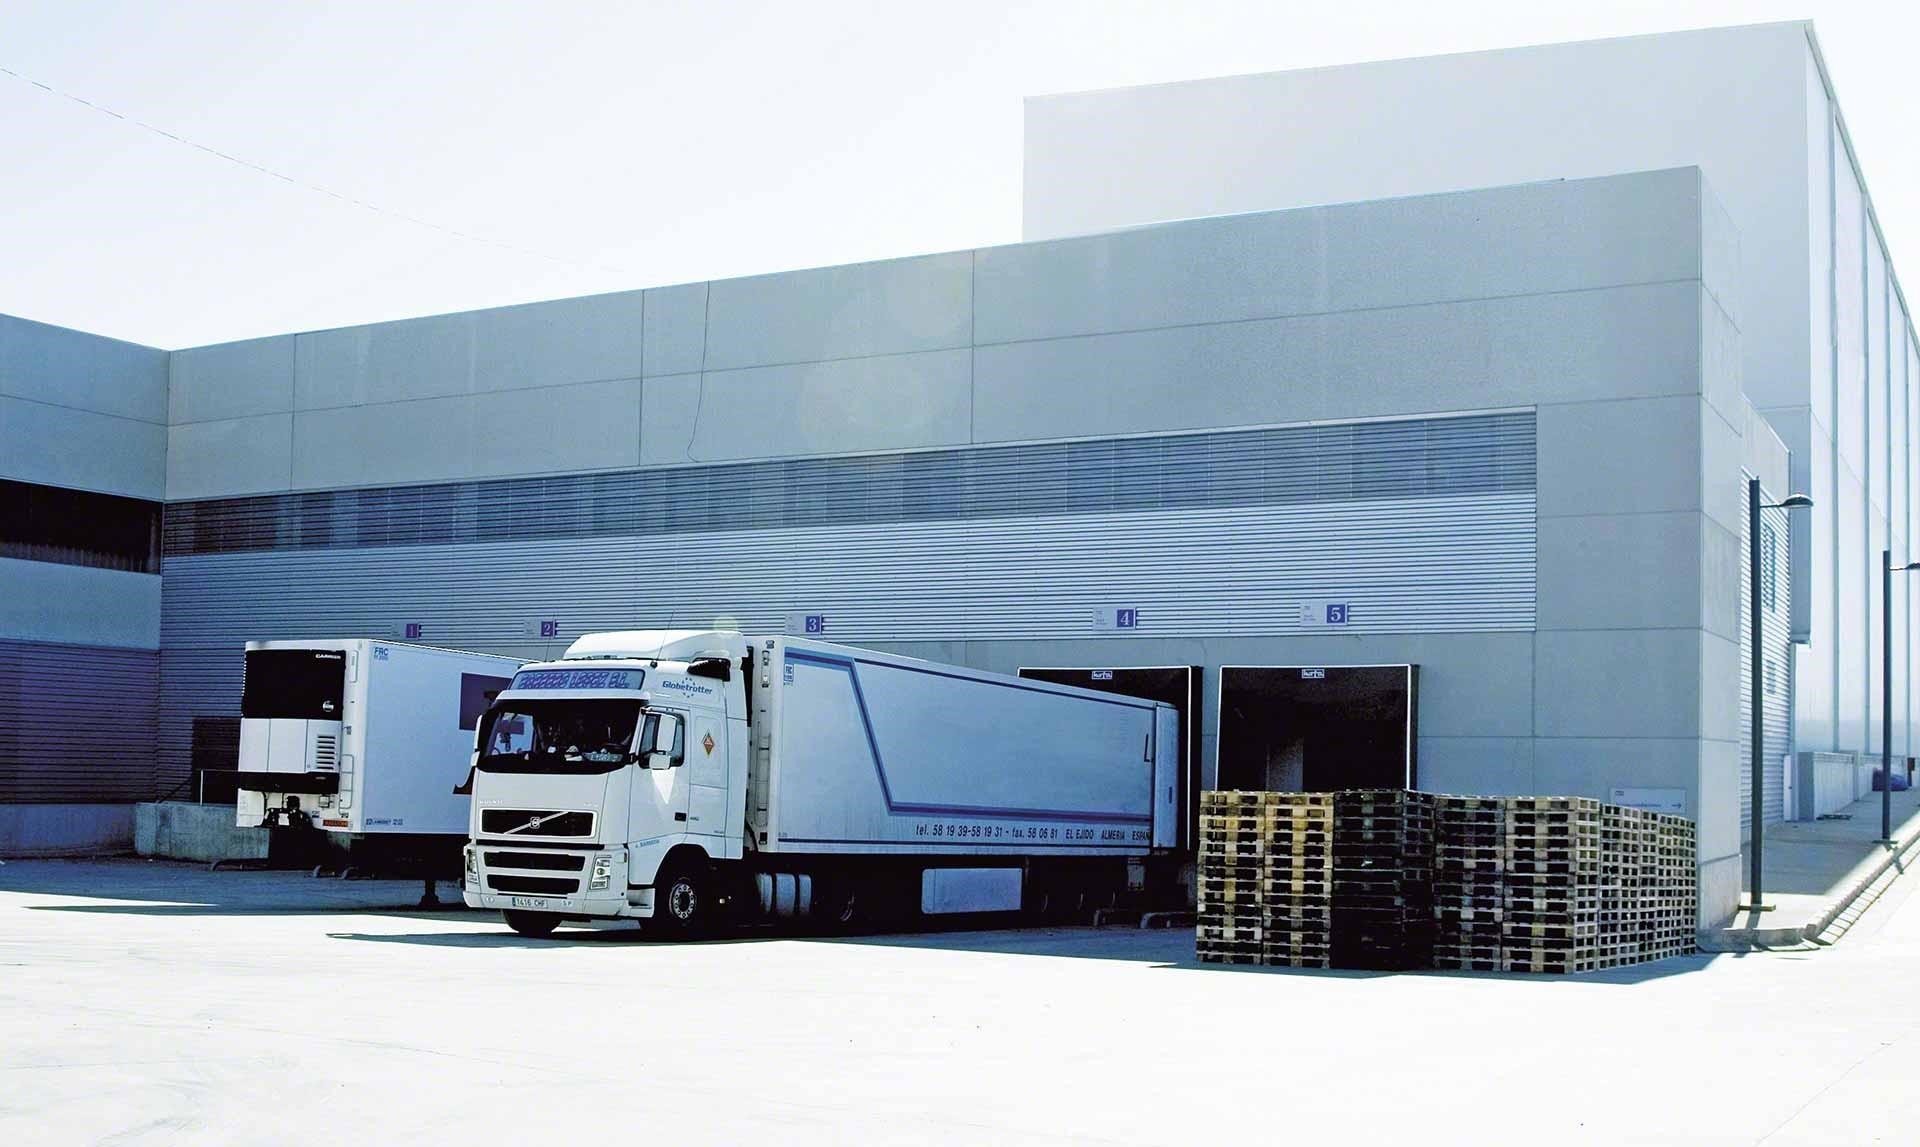 Des camions déchargent leurs marchandises dans un entrepôt, étape intégrante des flux logistiques du cross-docking.